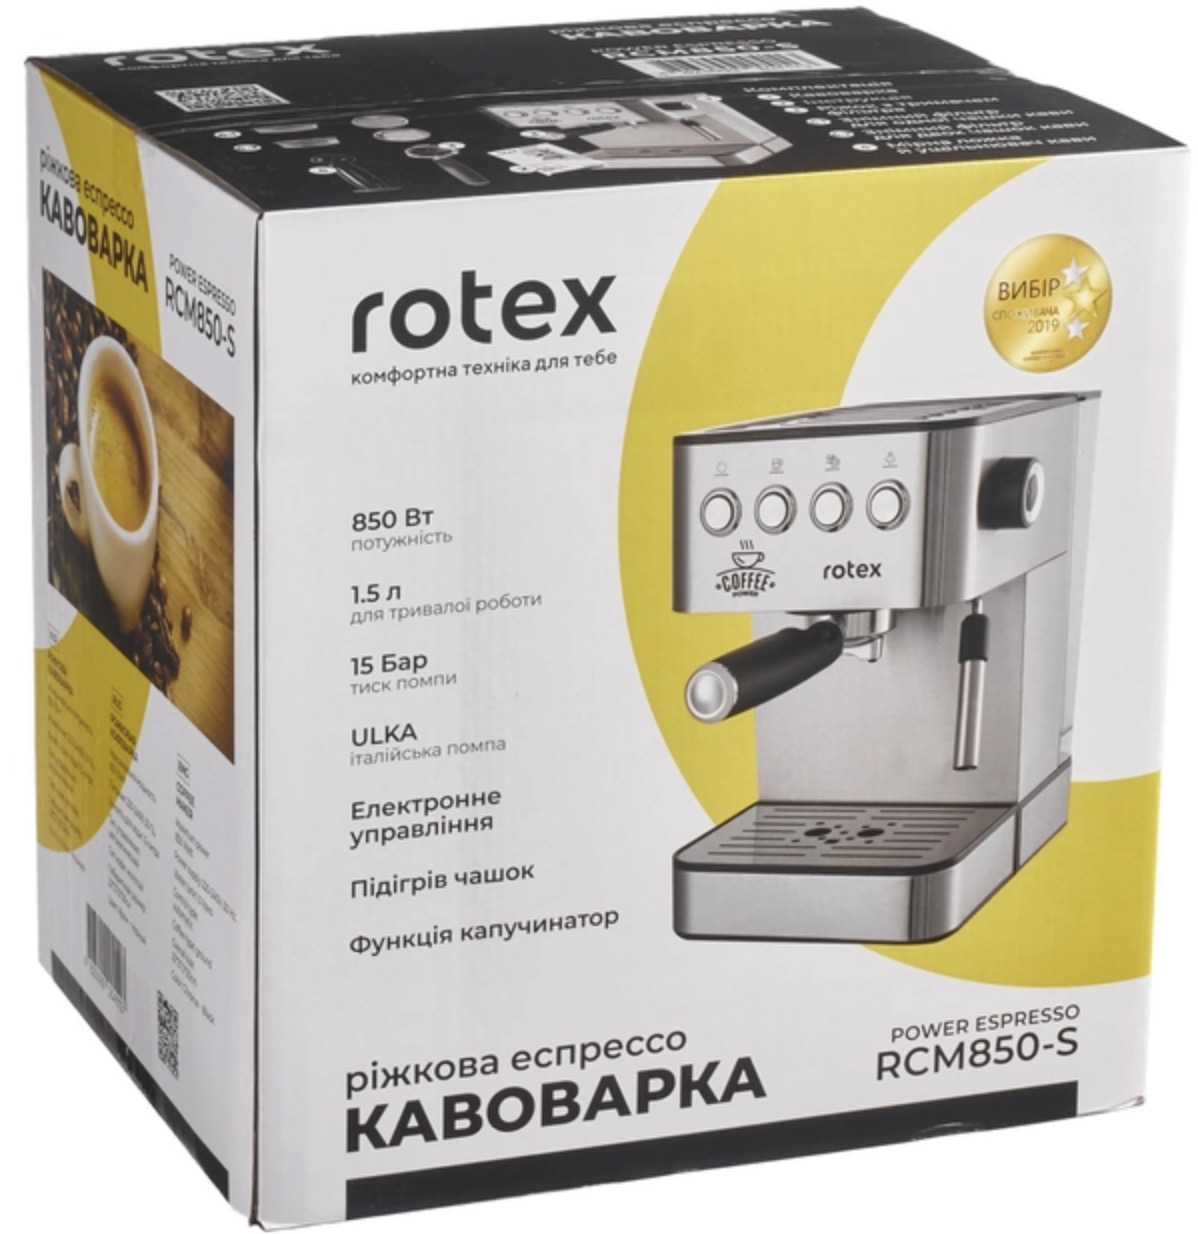 Кавоварка Rotex RCM850-S Power Espresso характеристики - фотографія 7